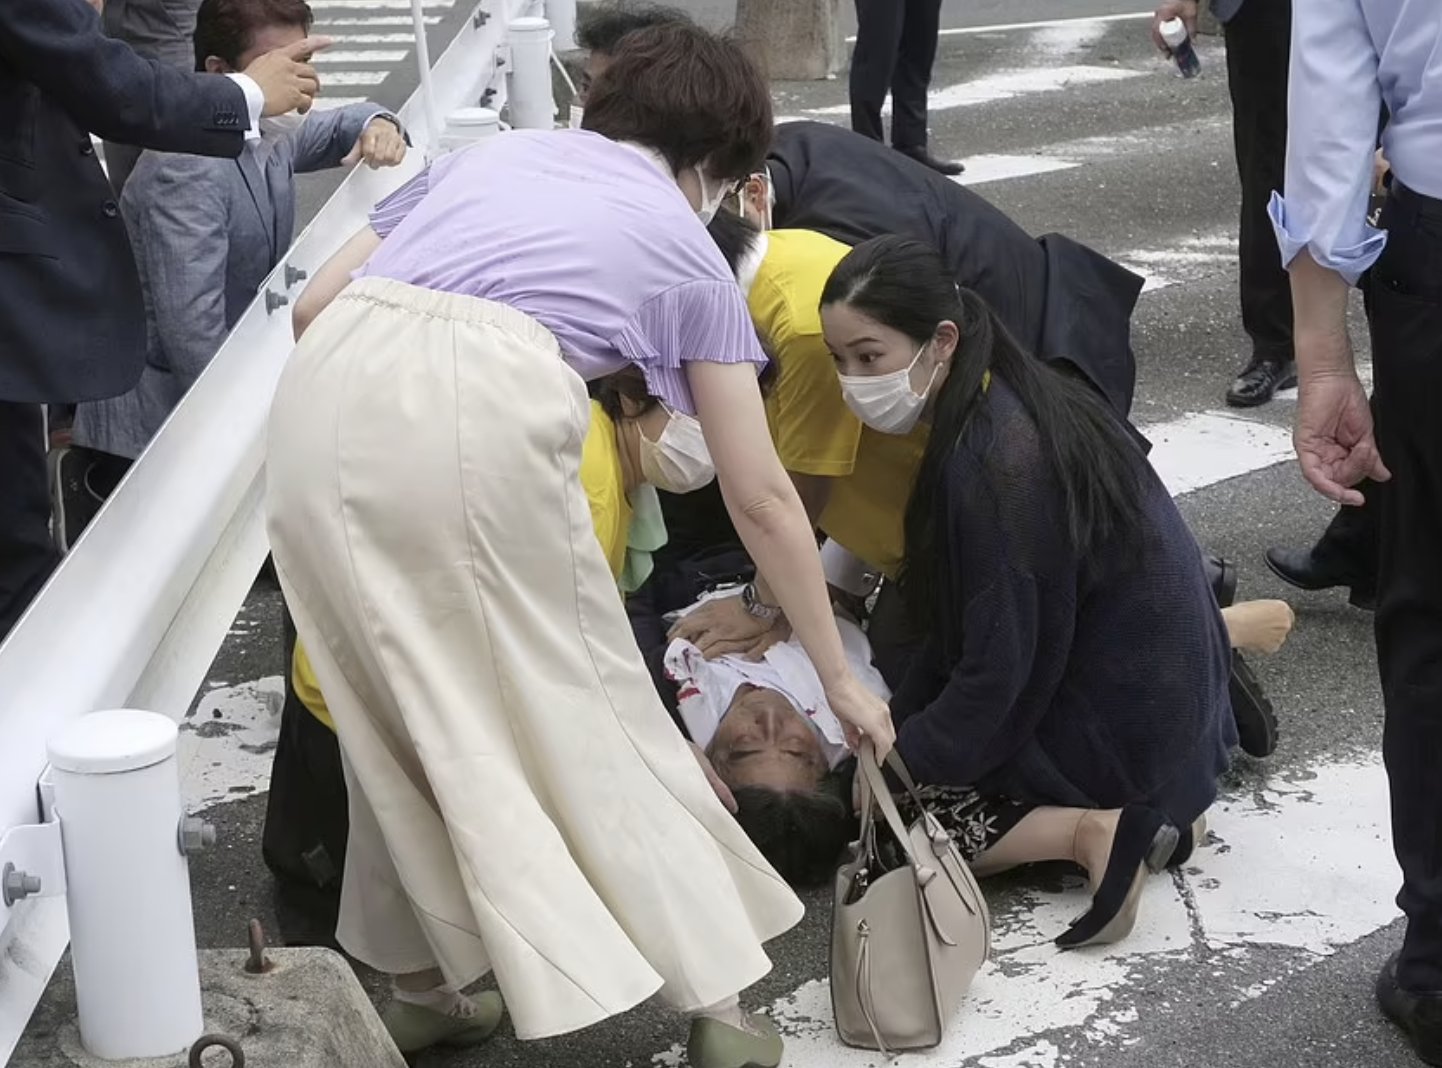 لحظة إصابة شينزو آبي رئيس وزراء اليابان السابق برصاصة في العنق